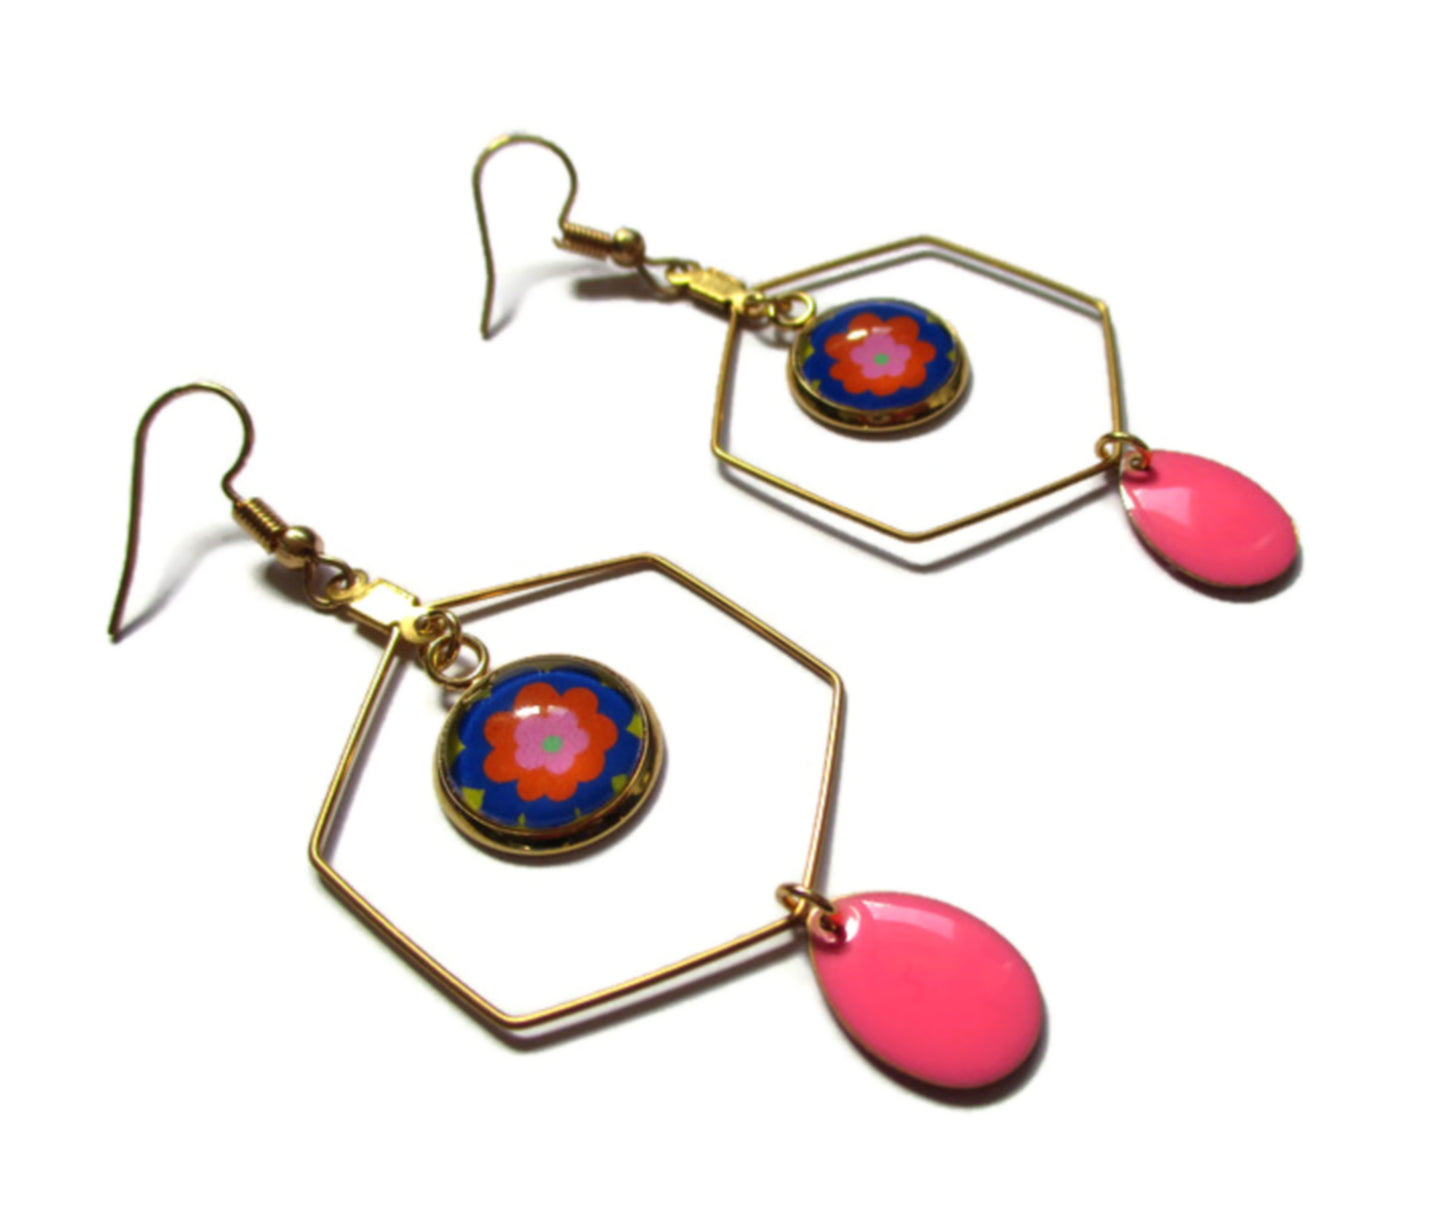 70's floral Hexagon Earrings , Golden Stainless Steel Earrings